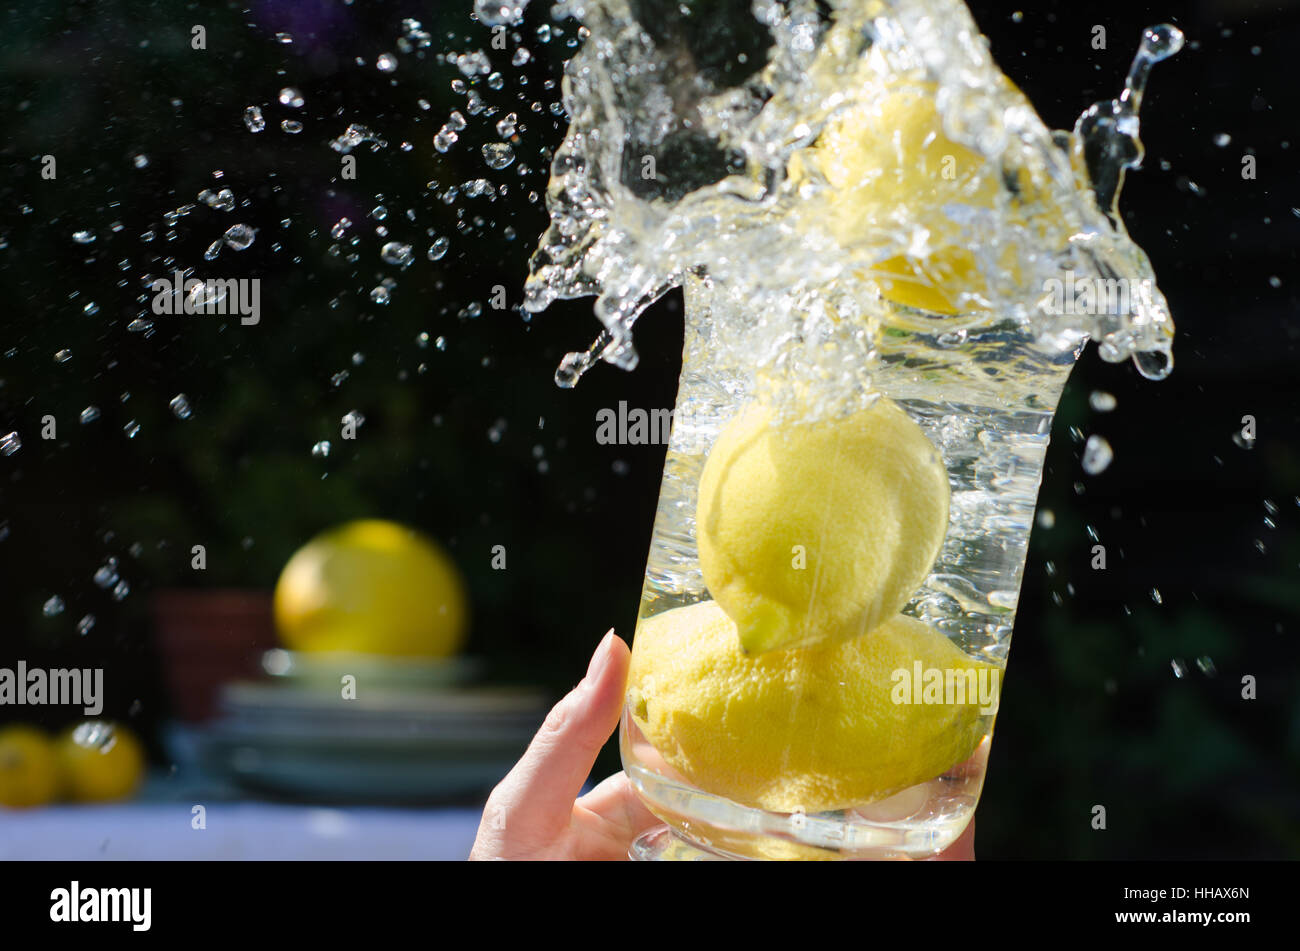 Estate, summerly brocca, la limonata, limoni, splash, acqua, motion, rinvio, Foto Stock